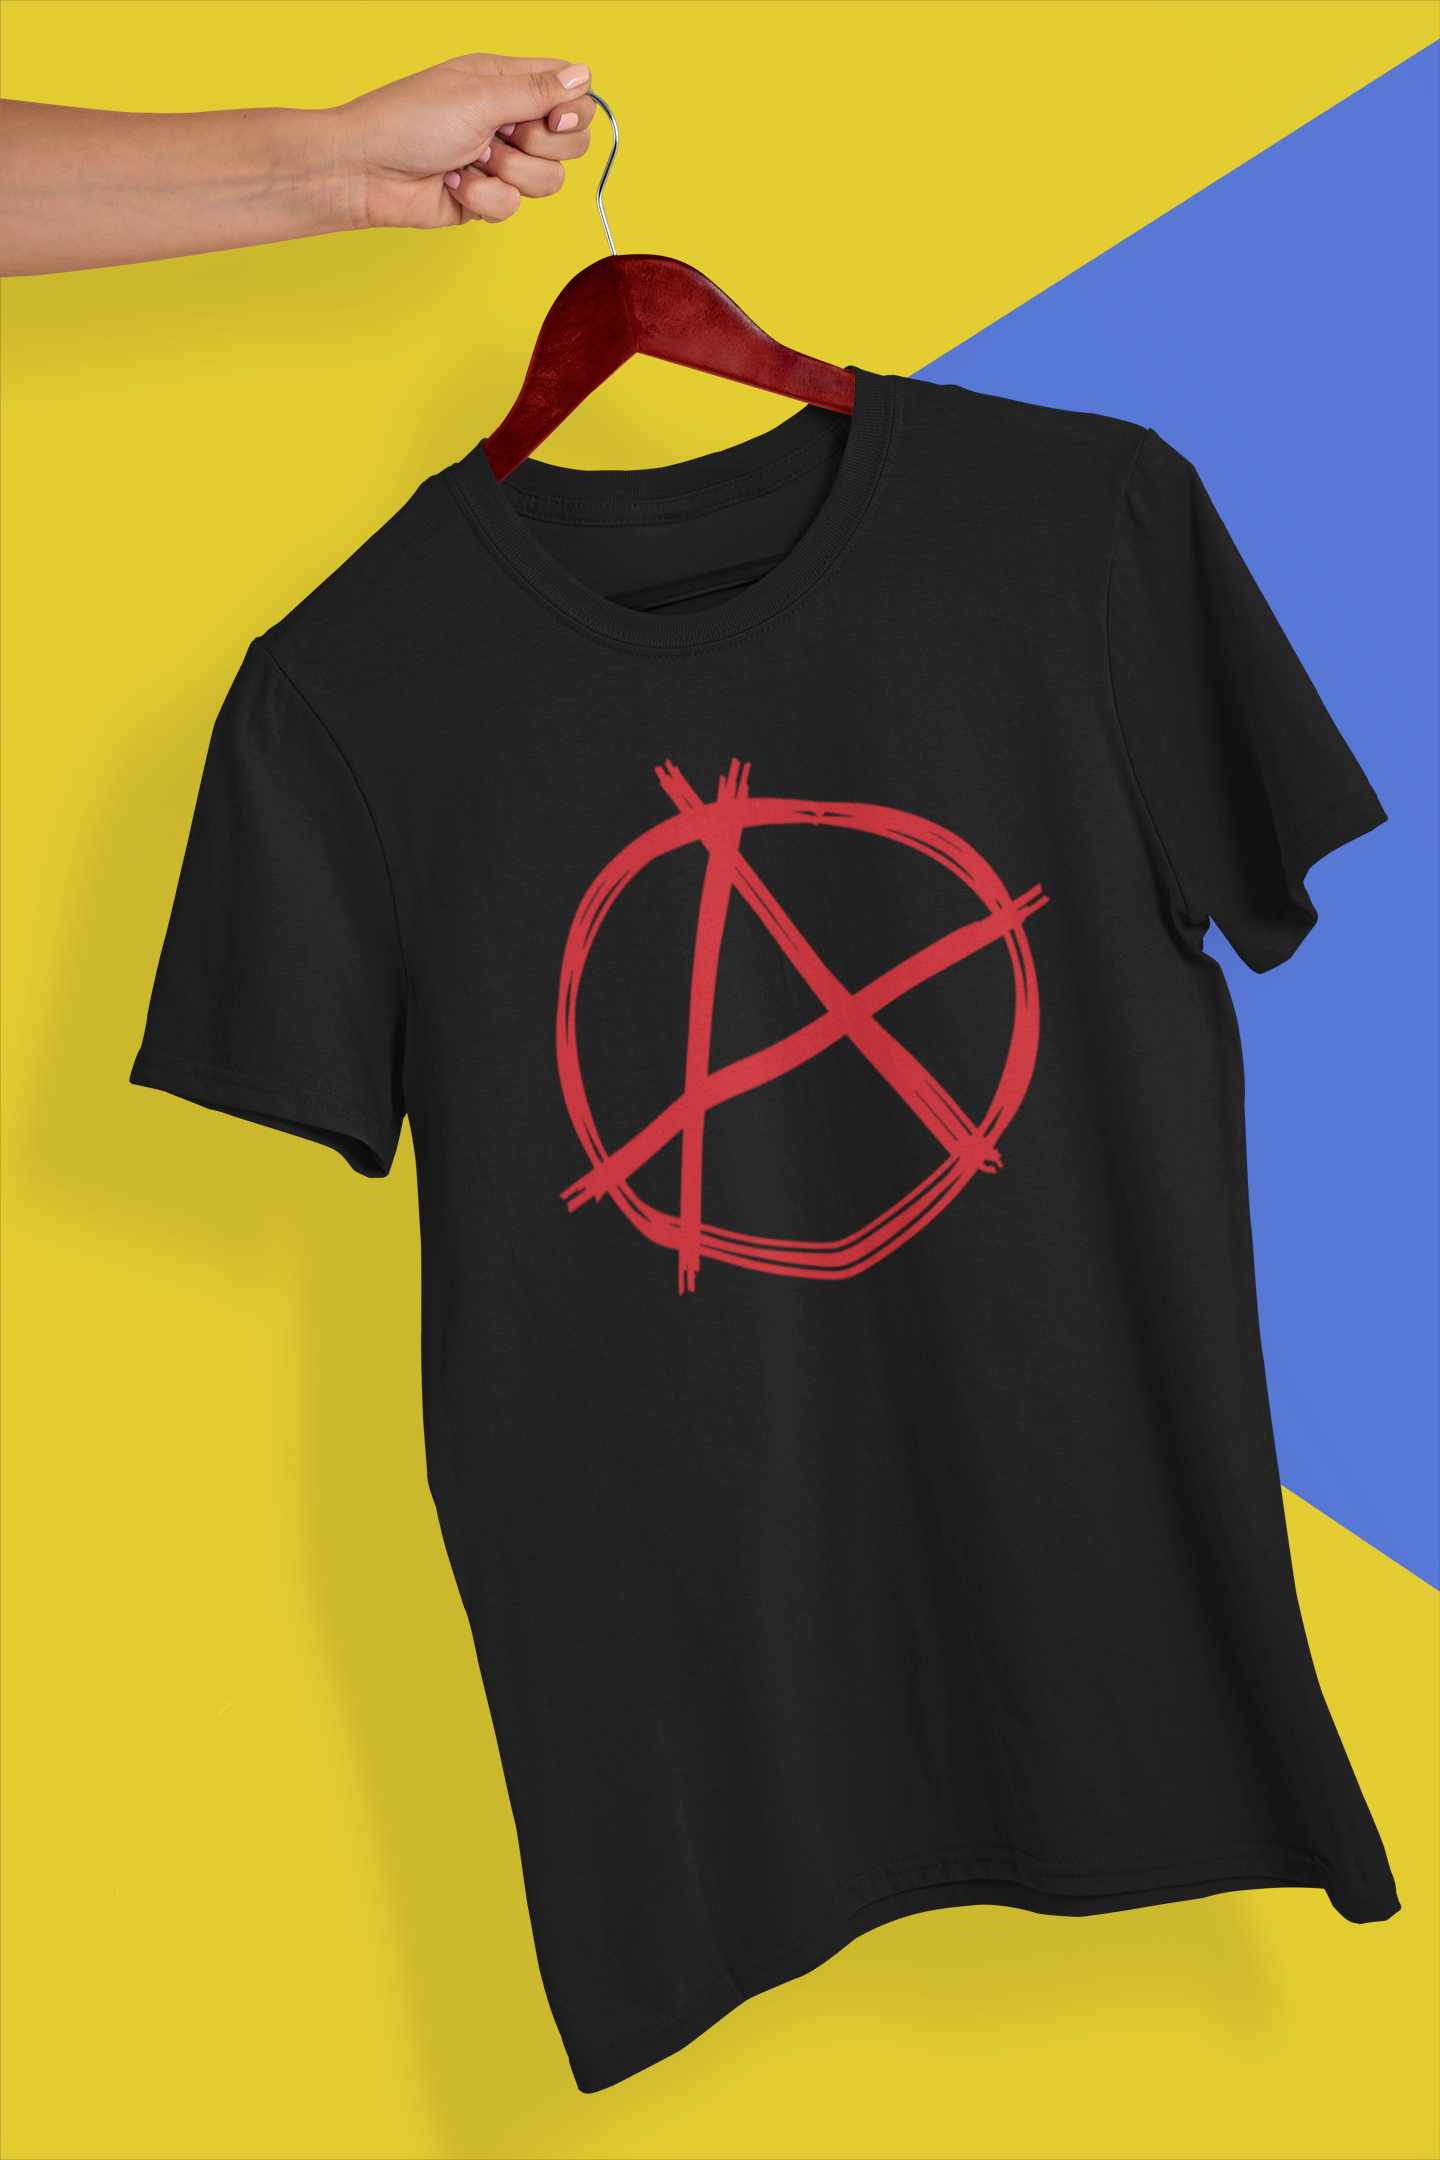 The Anarchist Tshirt